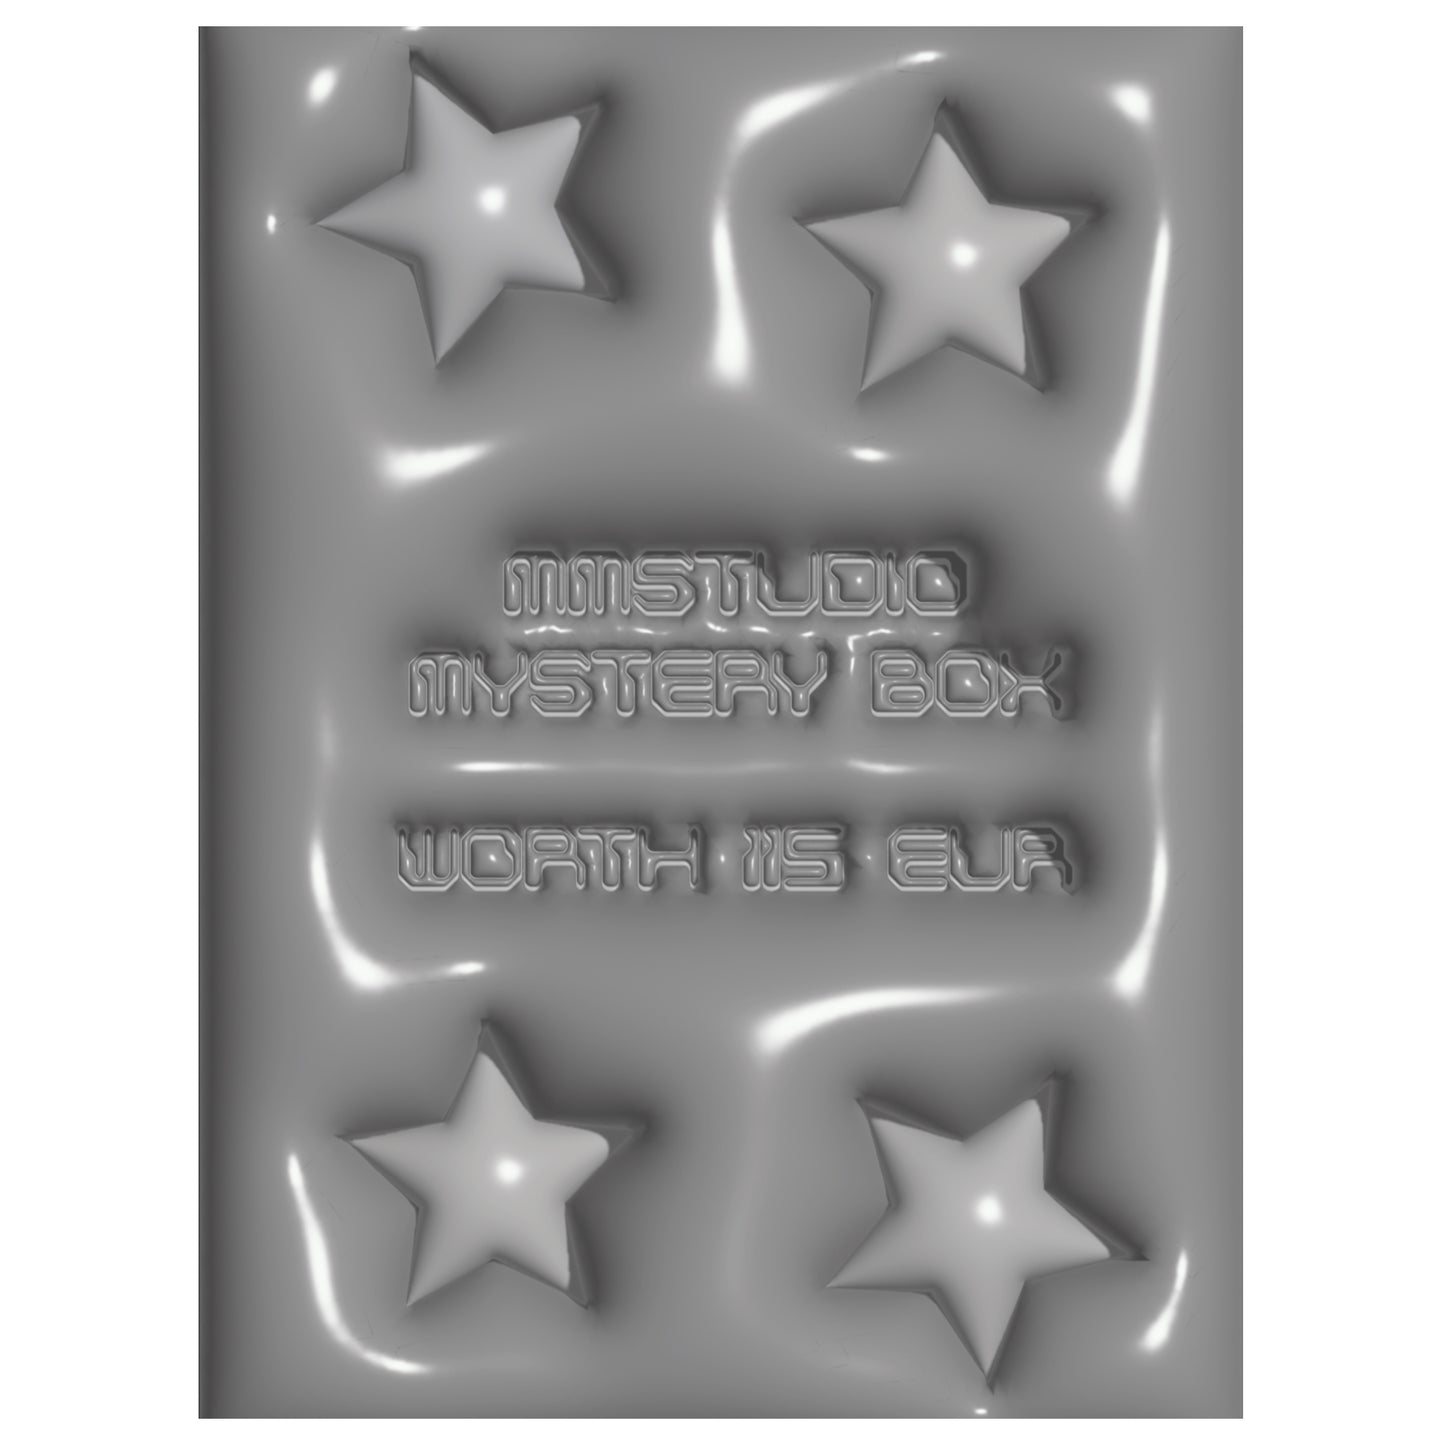 MMSTUDIO MYSTERY BOX 1 WORTH €115